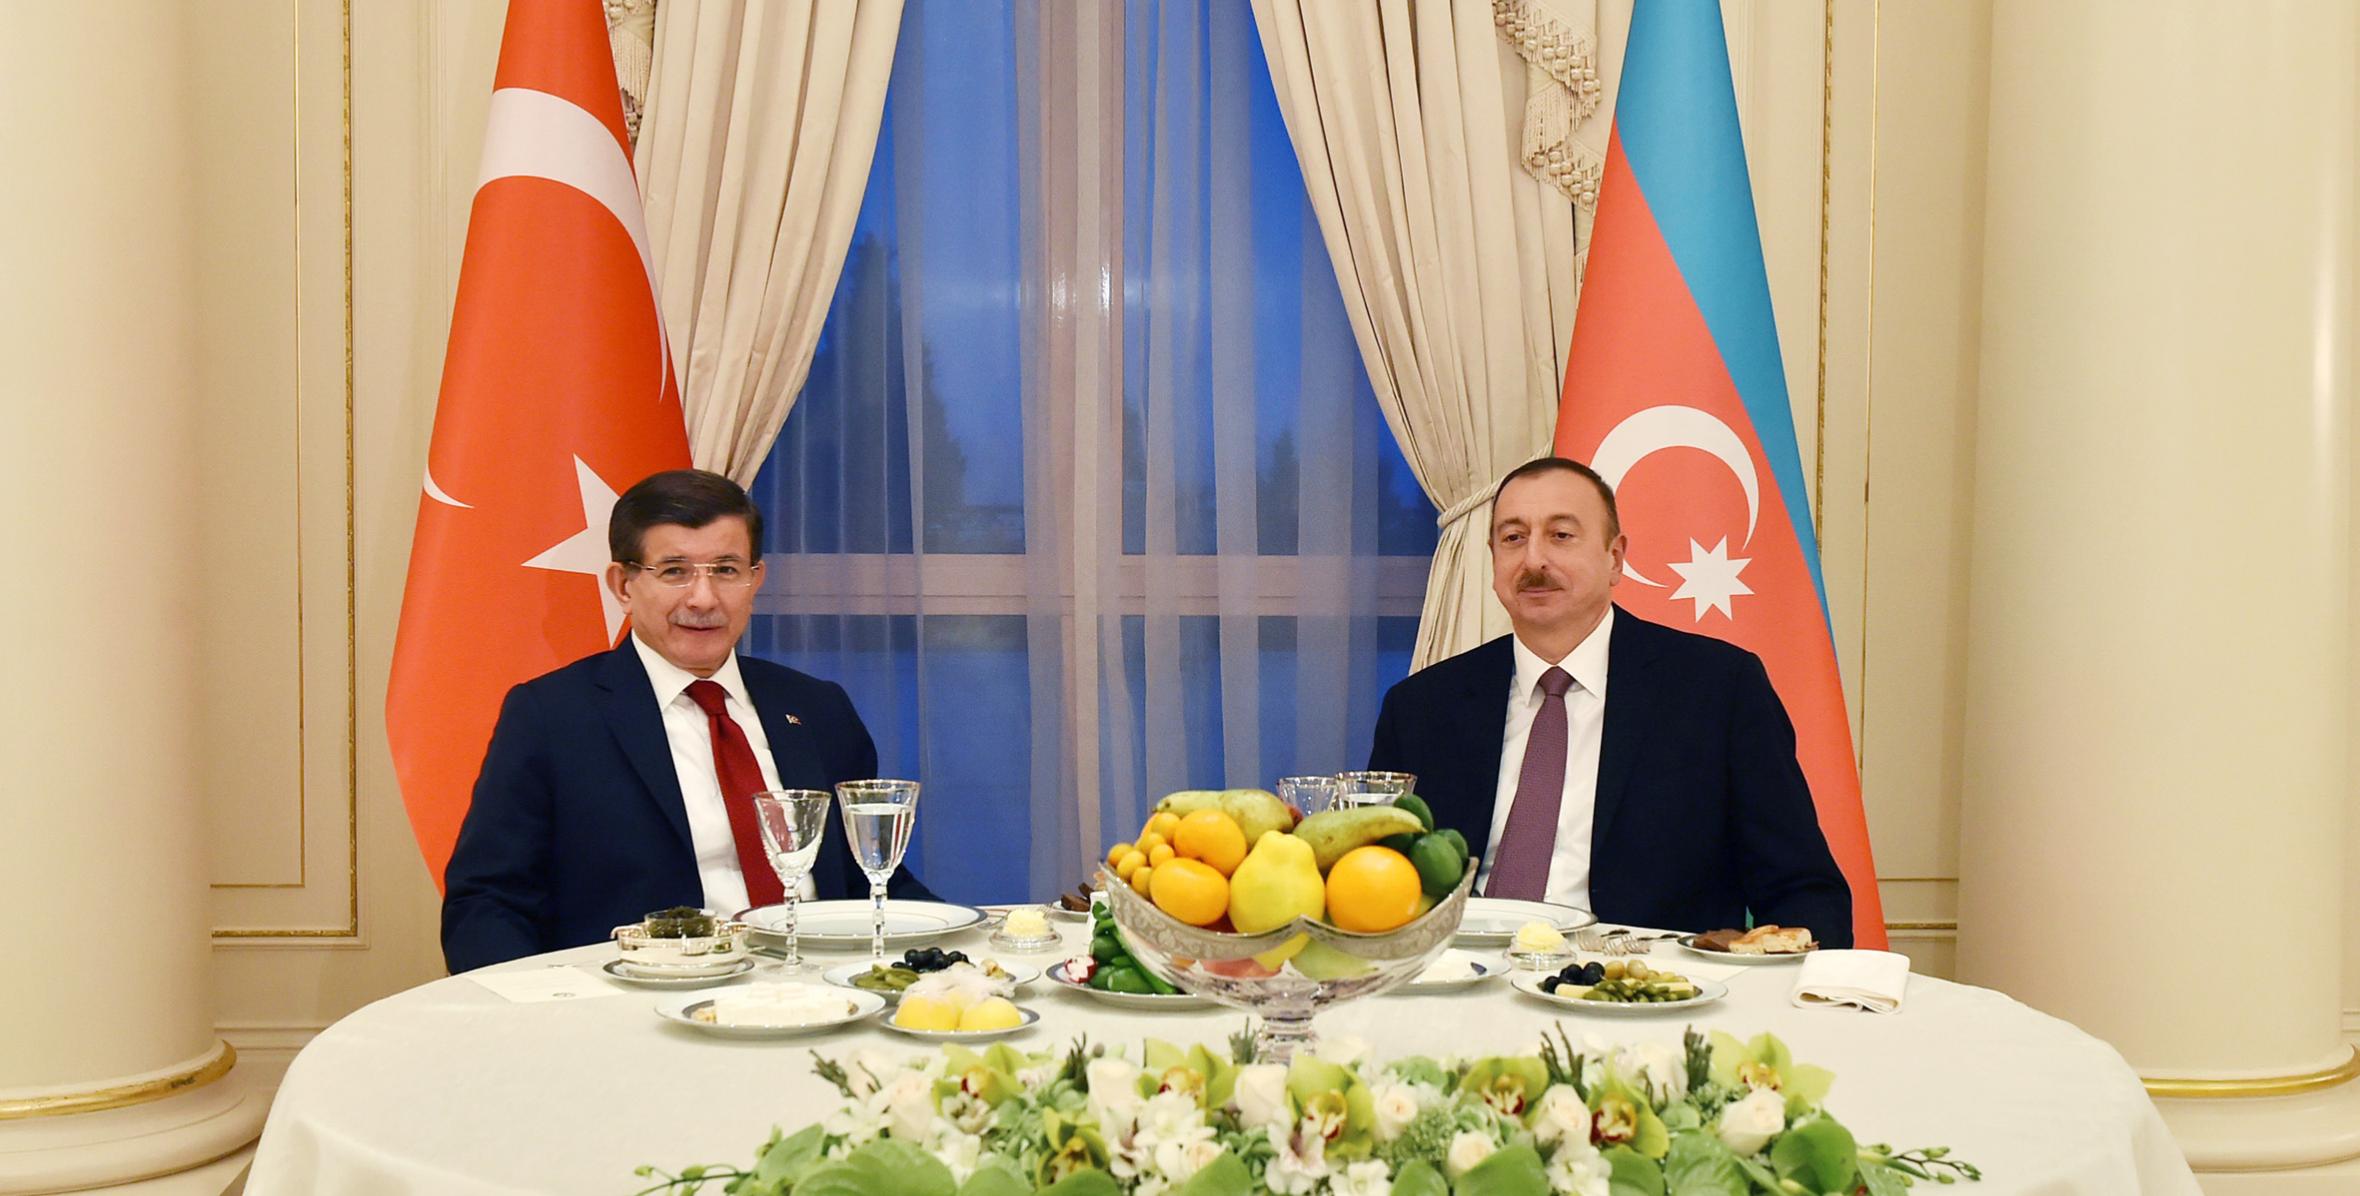 От имени Ильхама Алиева устроен прием в честь премьер-министра Ахмета Давутоглу